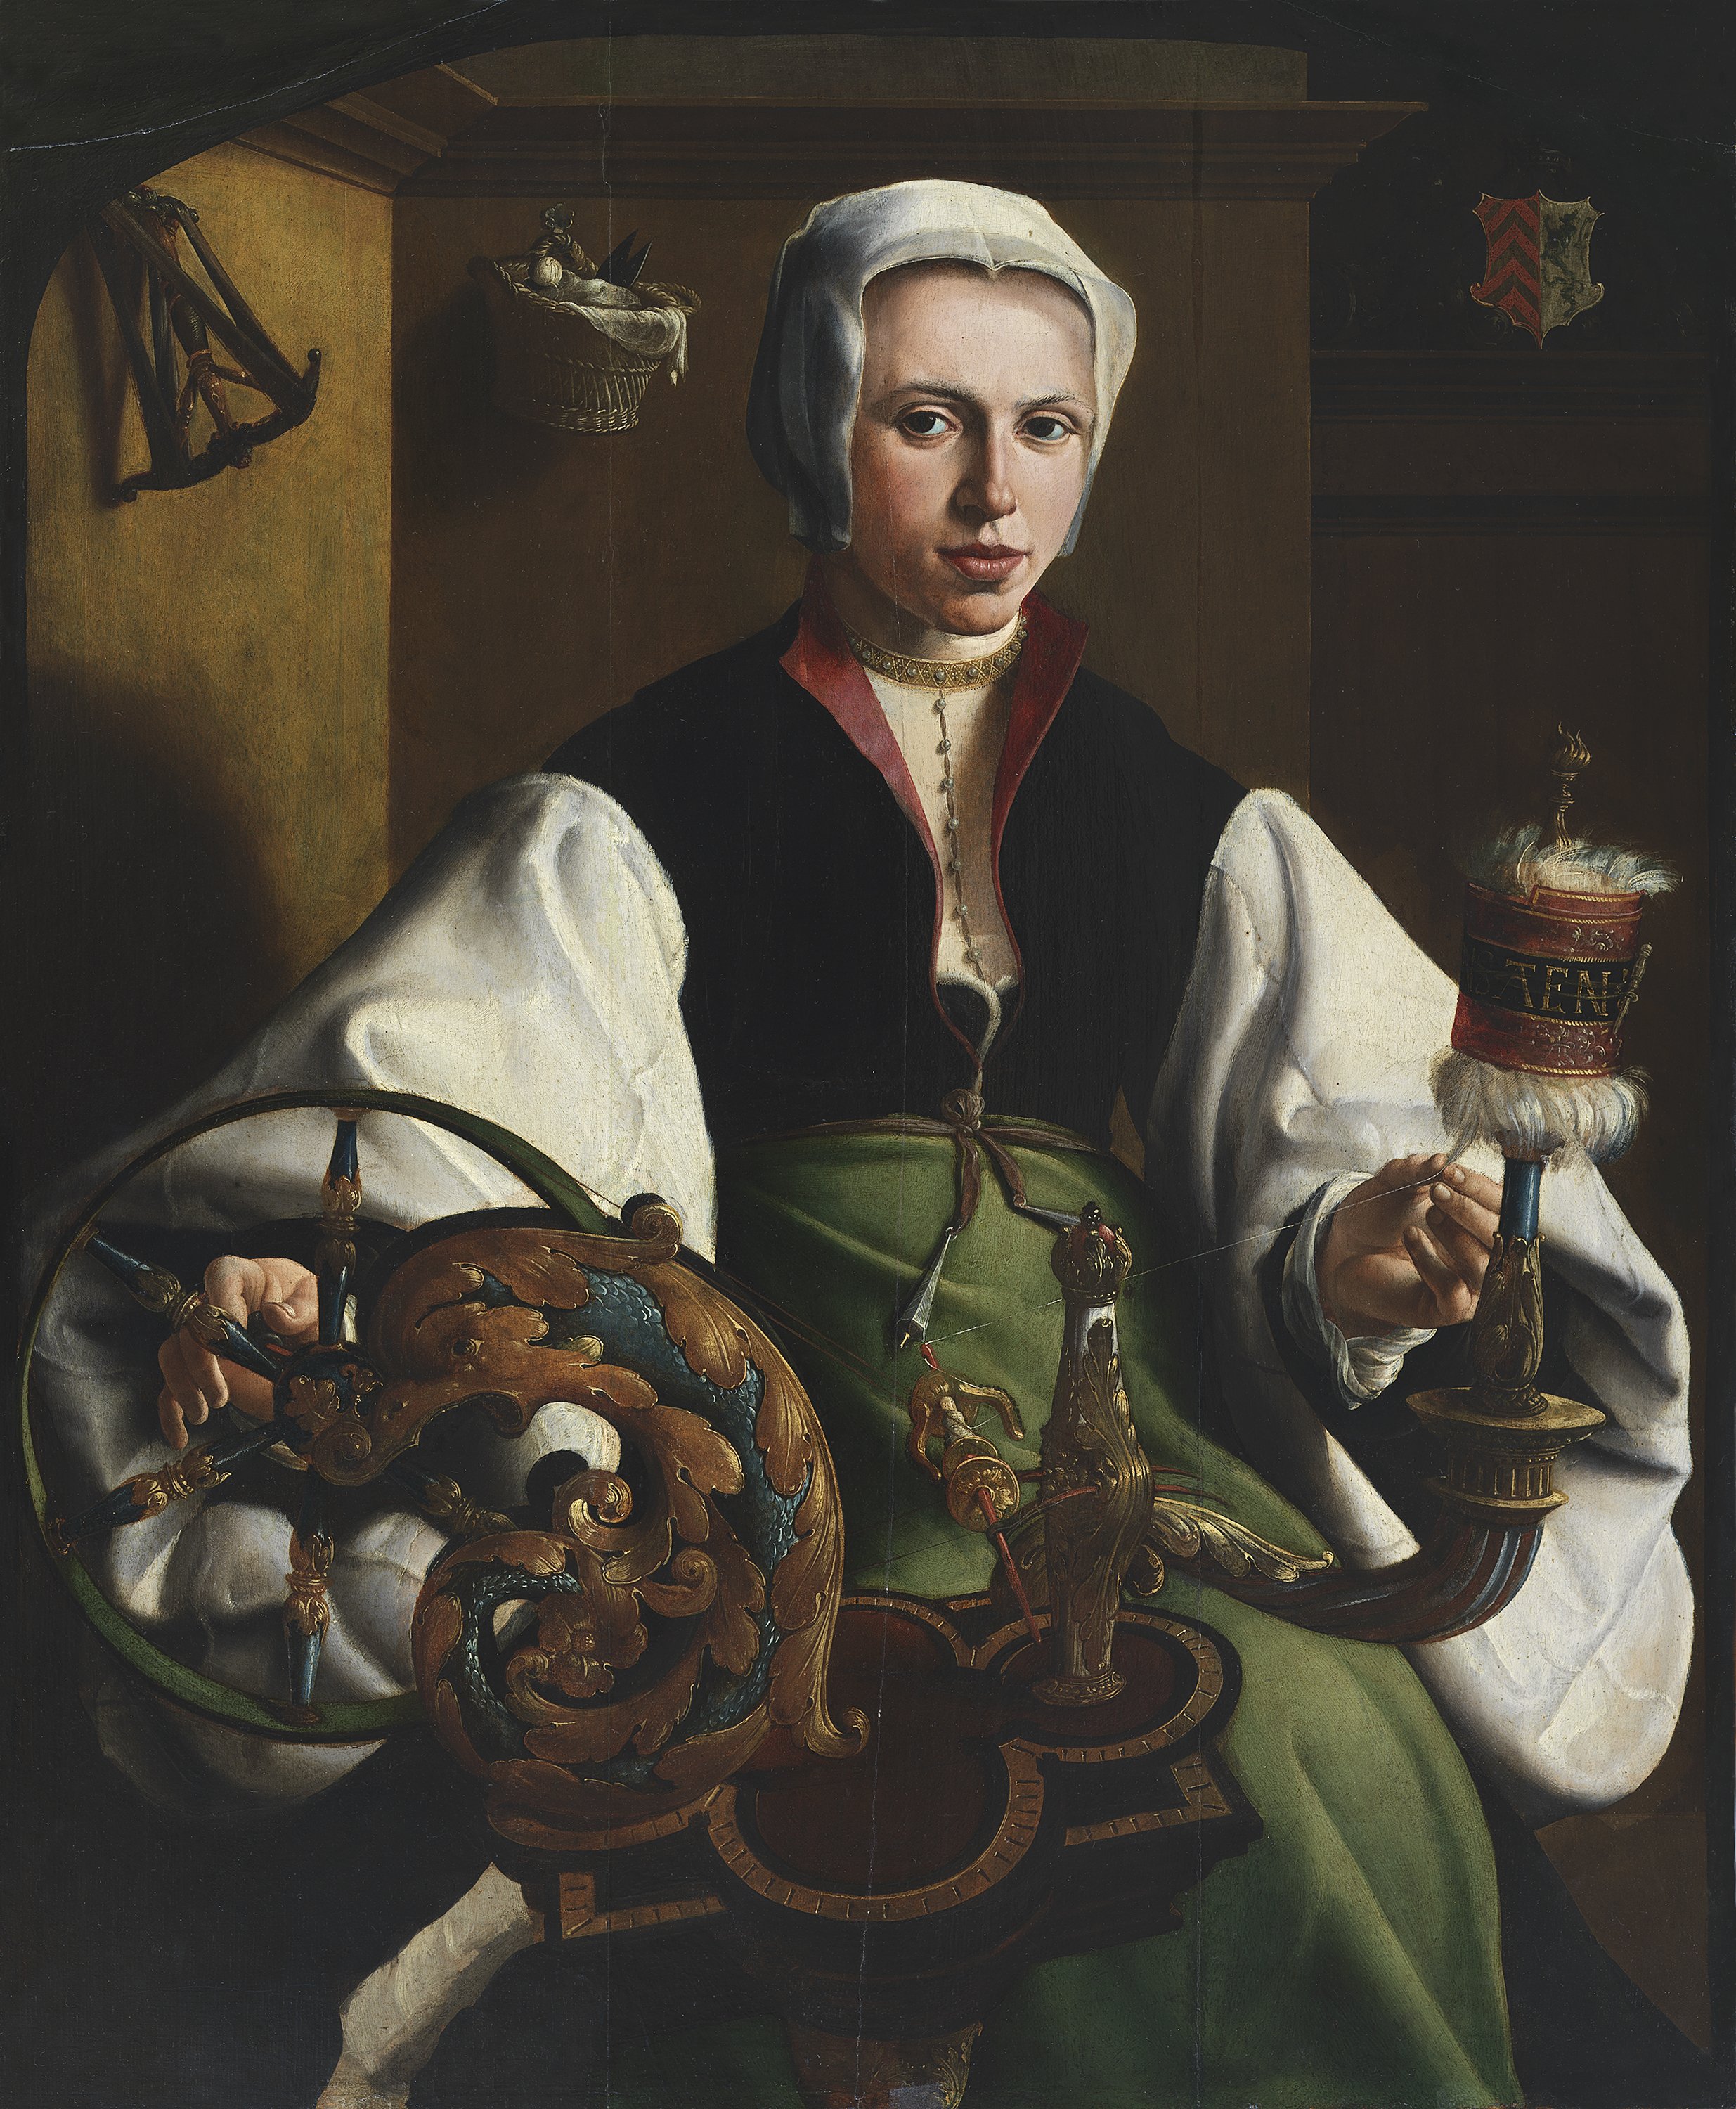 Portratit of a Lady spinning. Retrato de una dama hilando, c. 1531